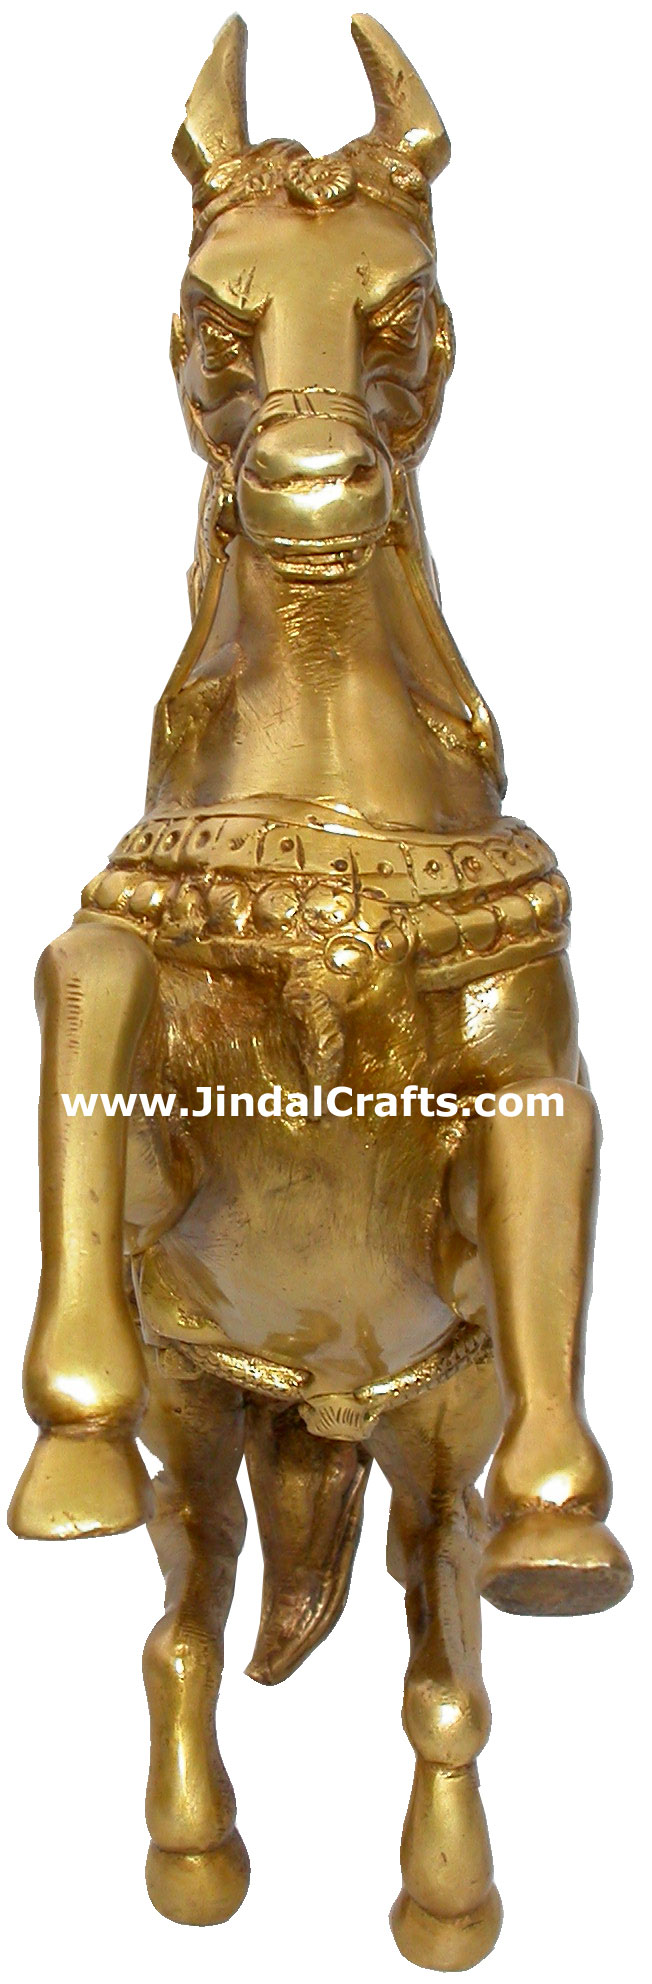 Horse Brass Animal Figure Sculpture Figurine India Arts